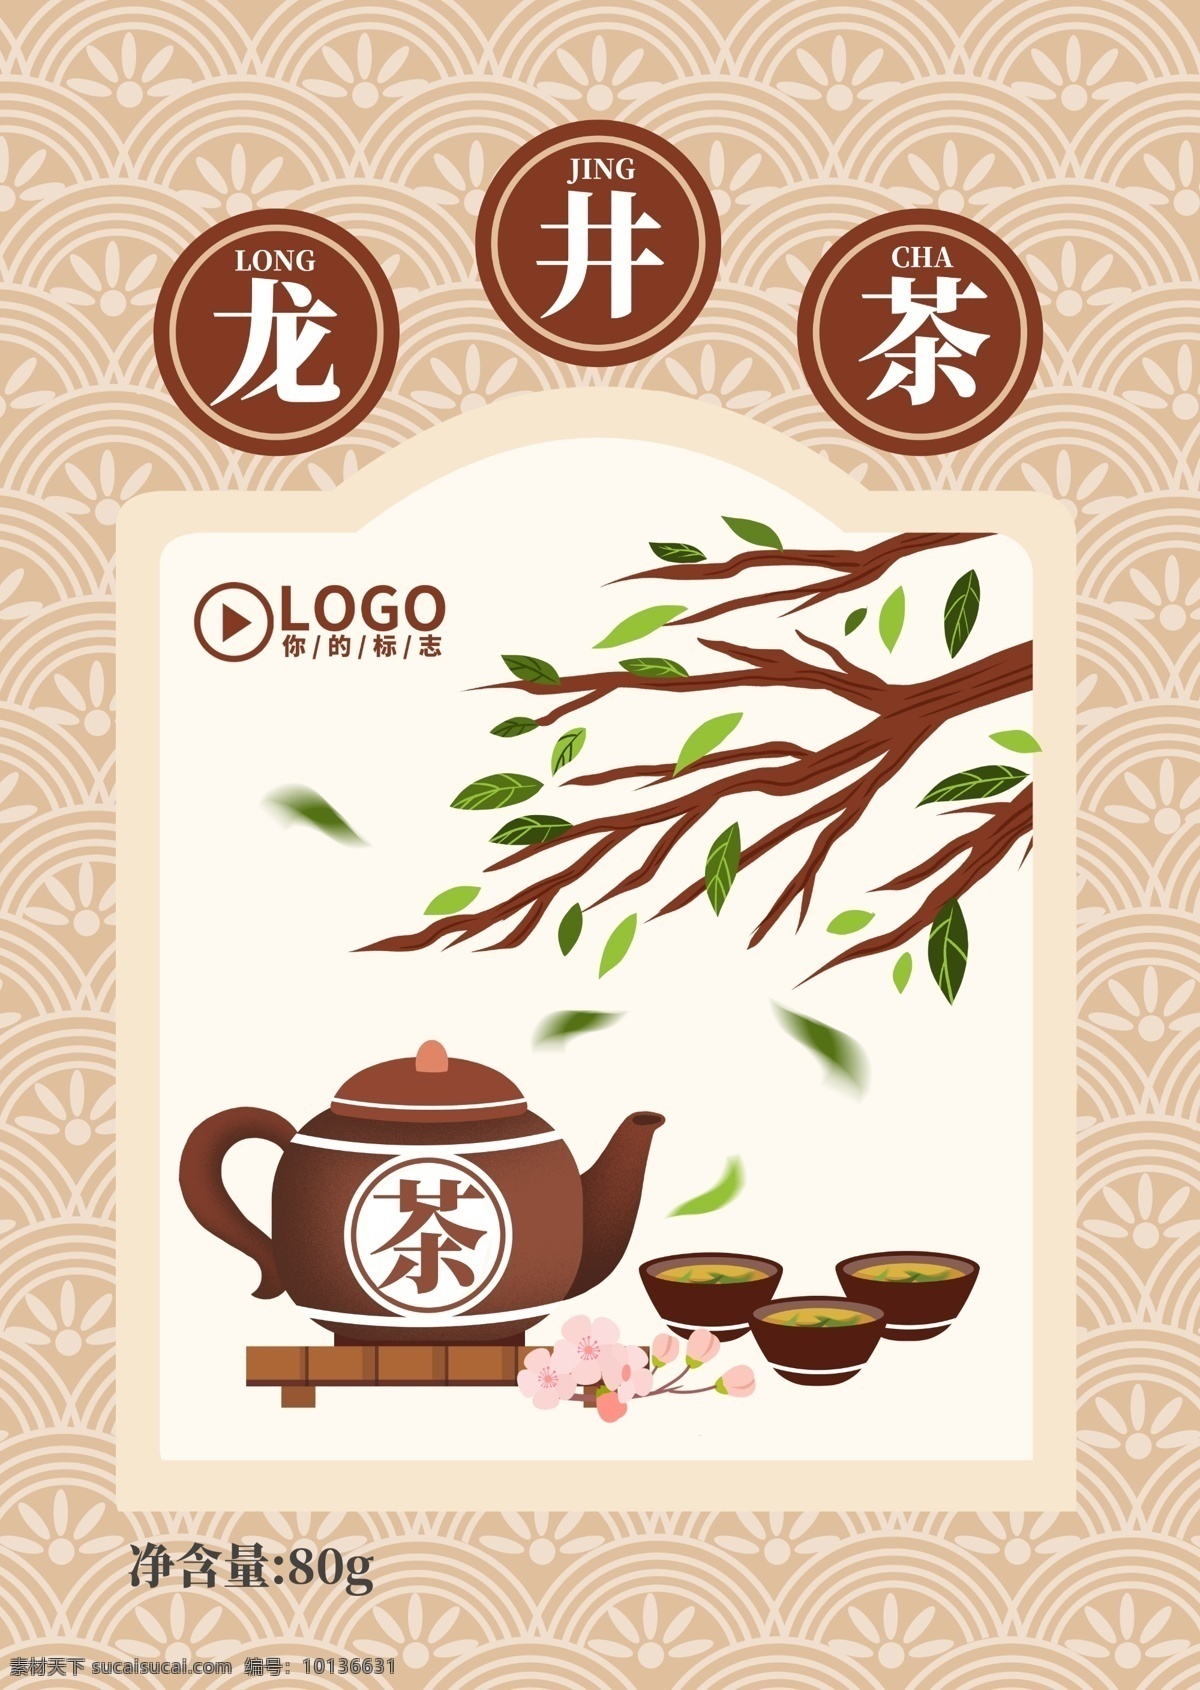 中国 风 龙井茶 茶叶 插画 包装 包装设计 茶叶包装设计 龙井包装模板 茶叶包装模板 食品包装设计 包装模板 茶壶 中国风 手绘包装设计